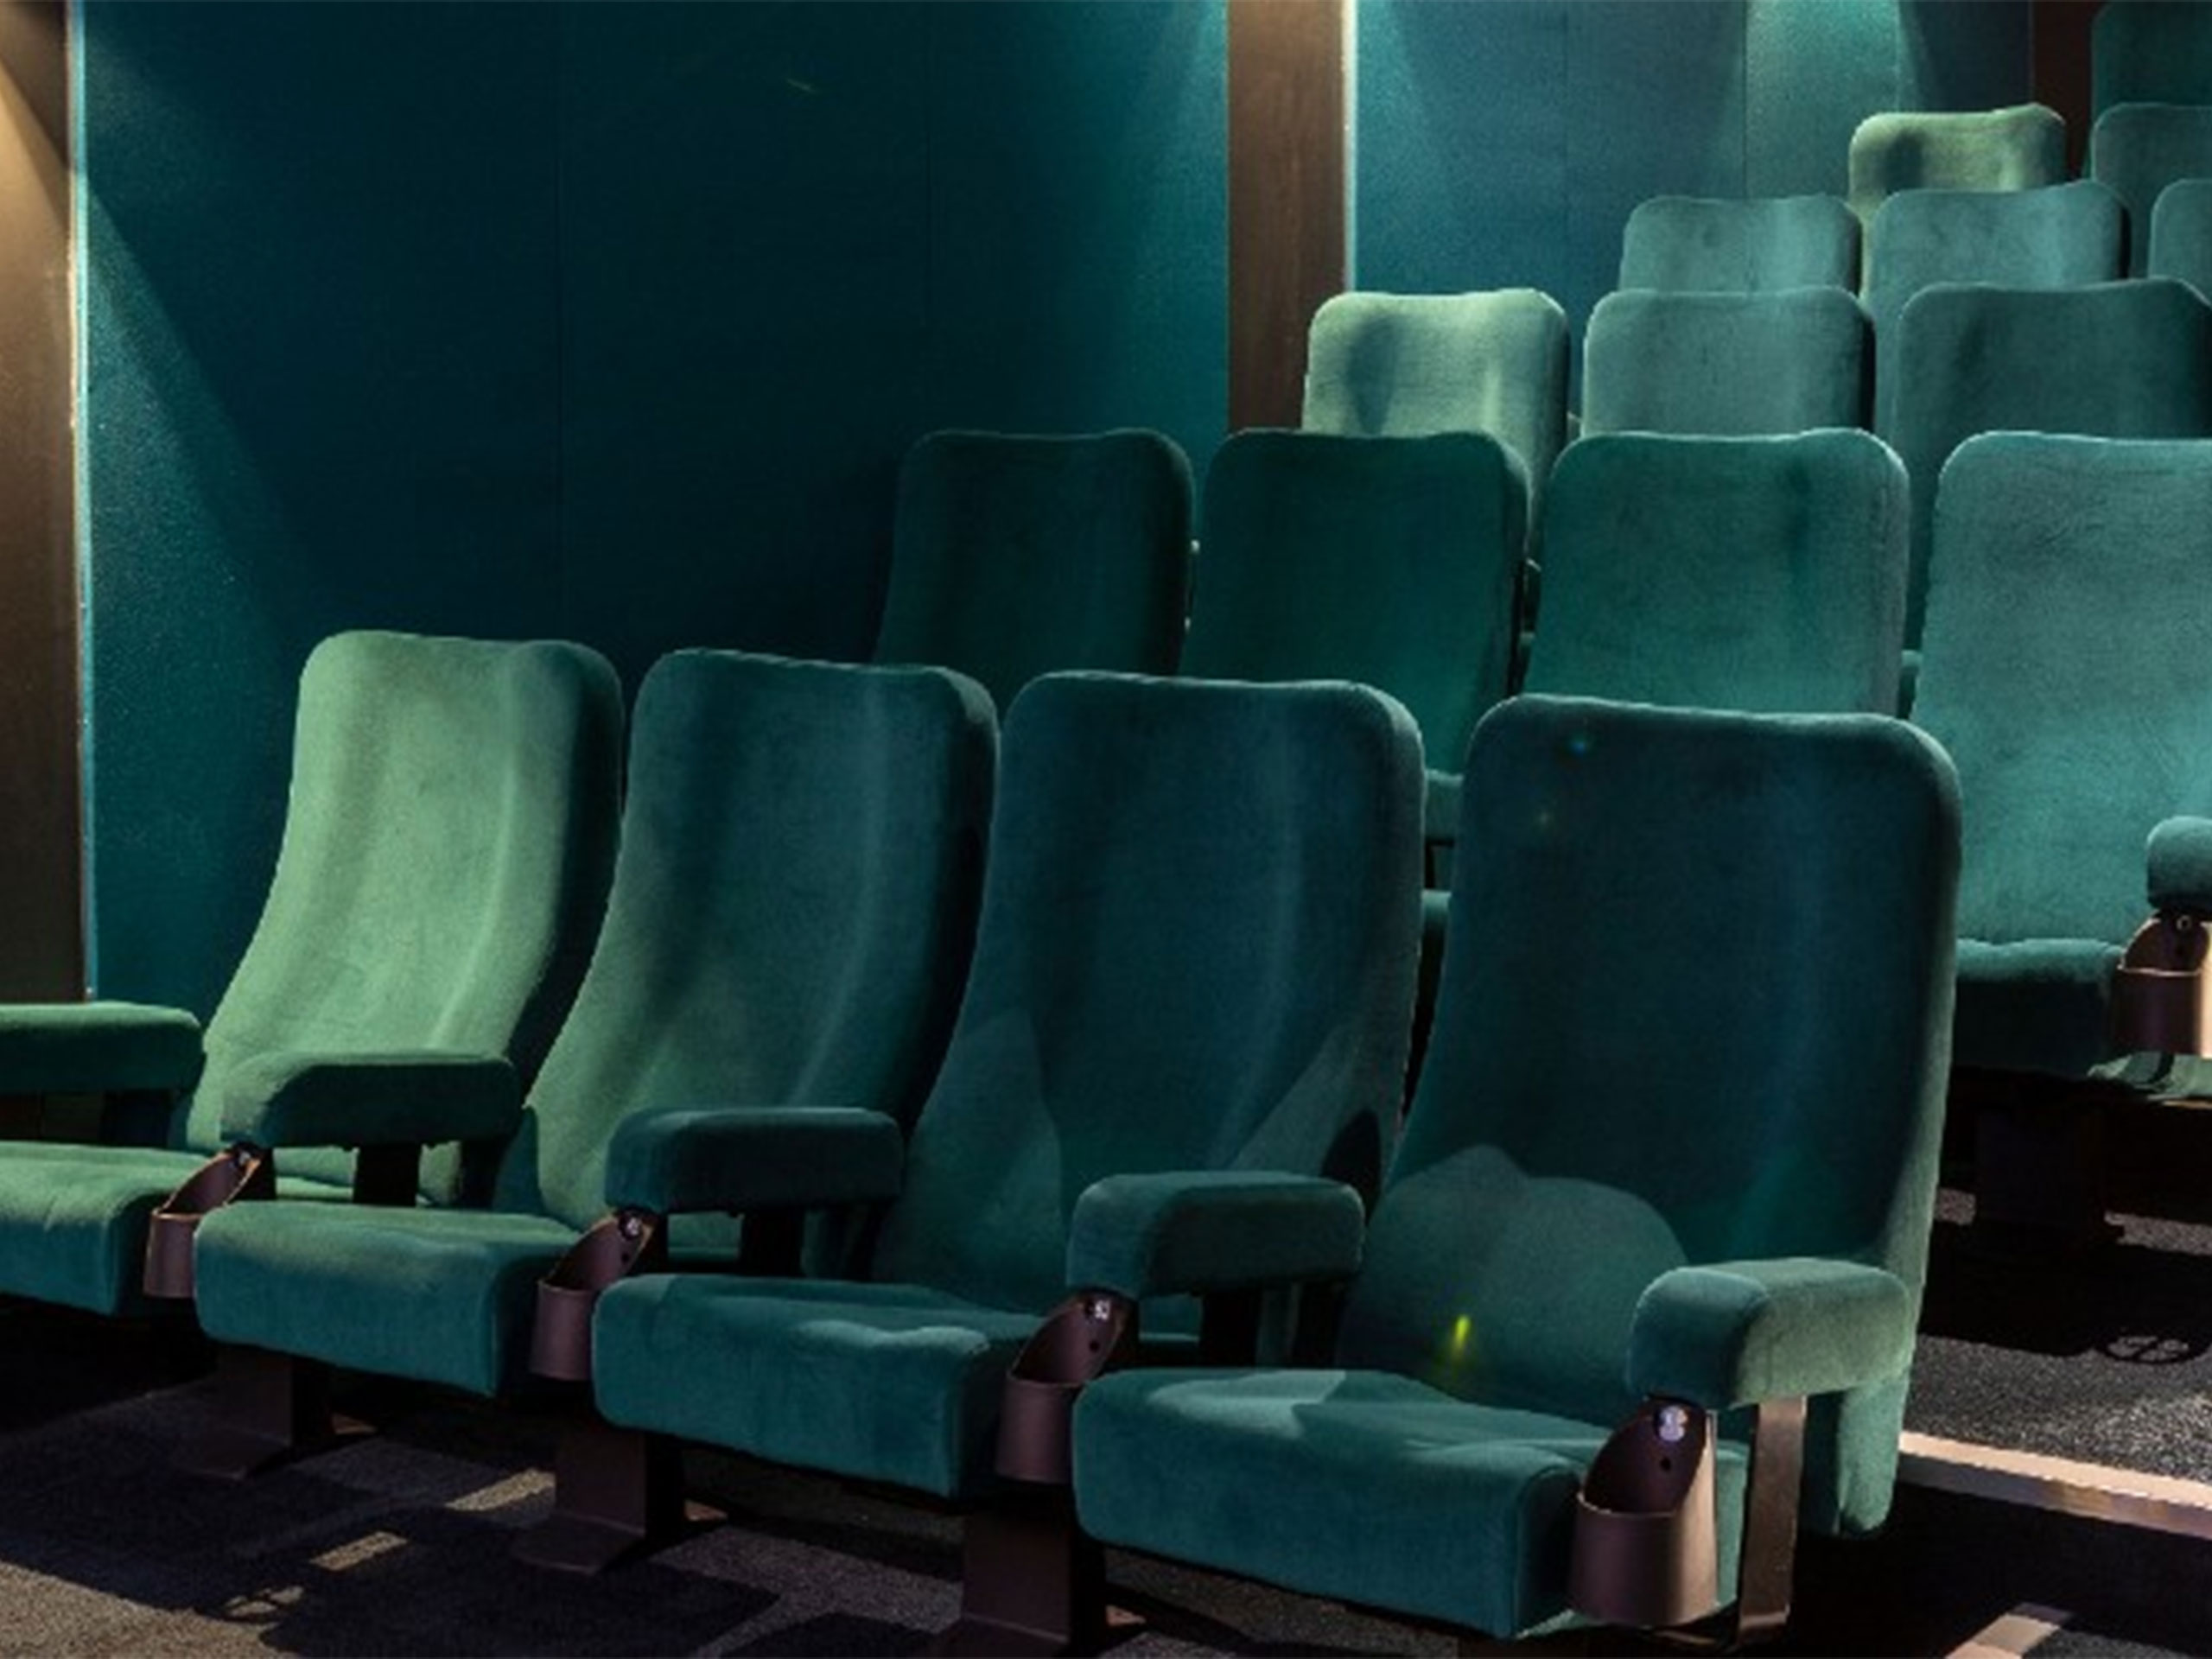 Screen 2 auditorium